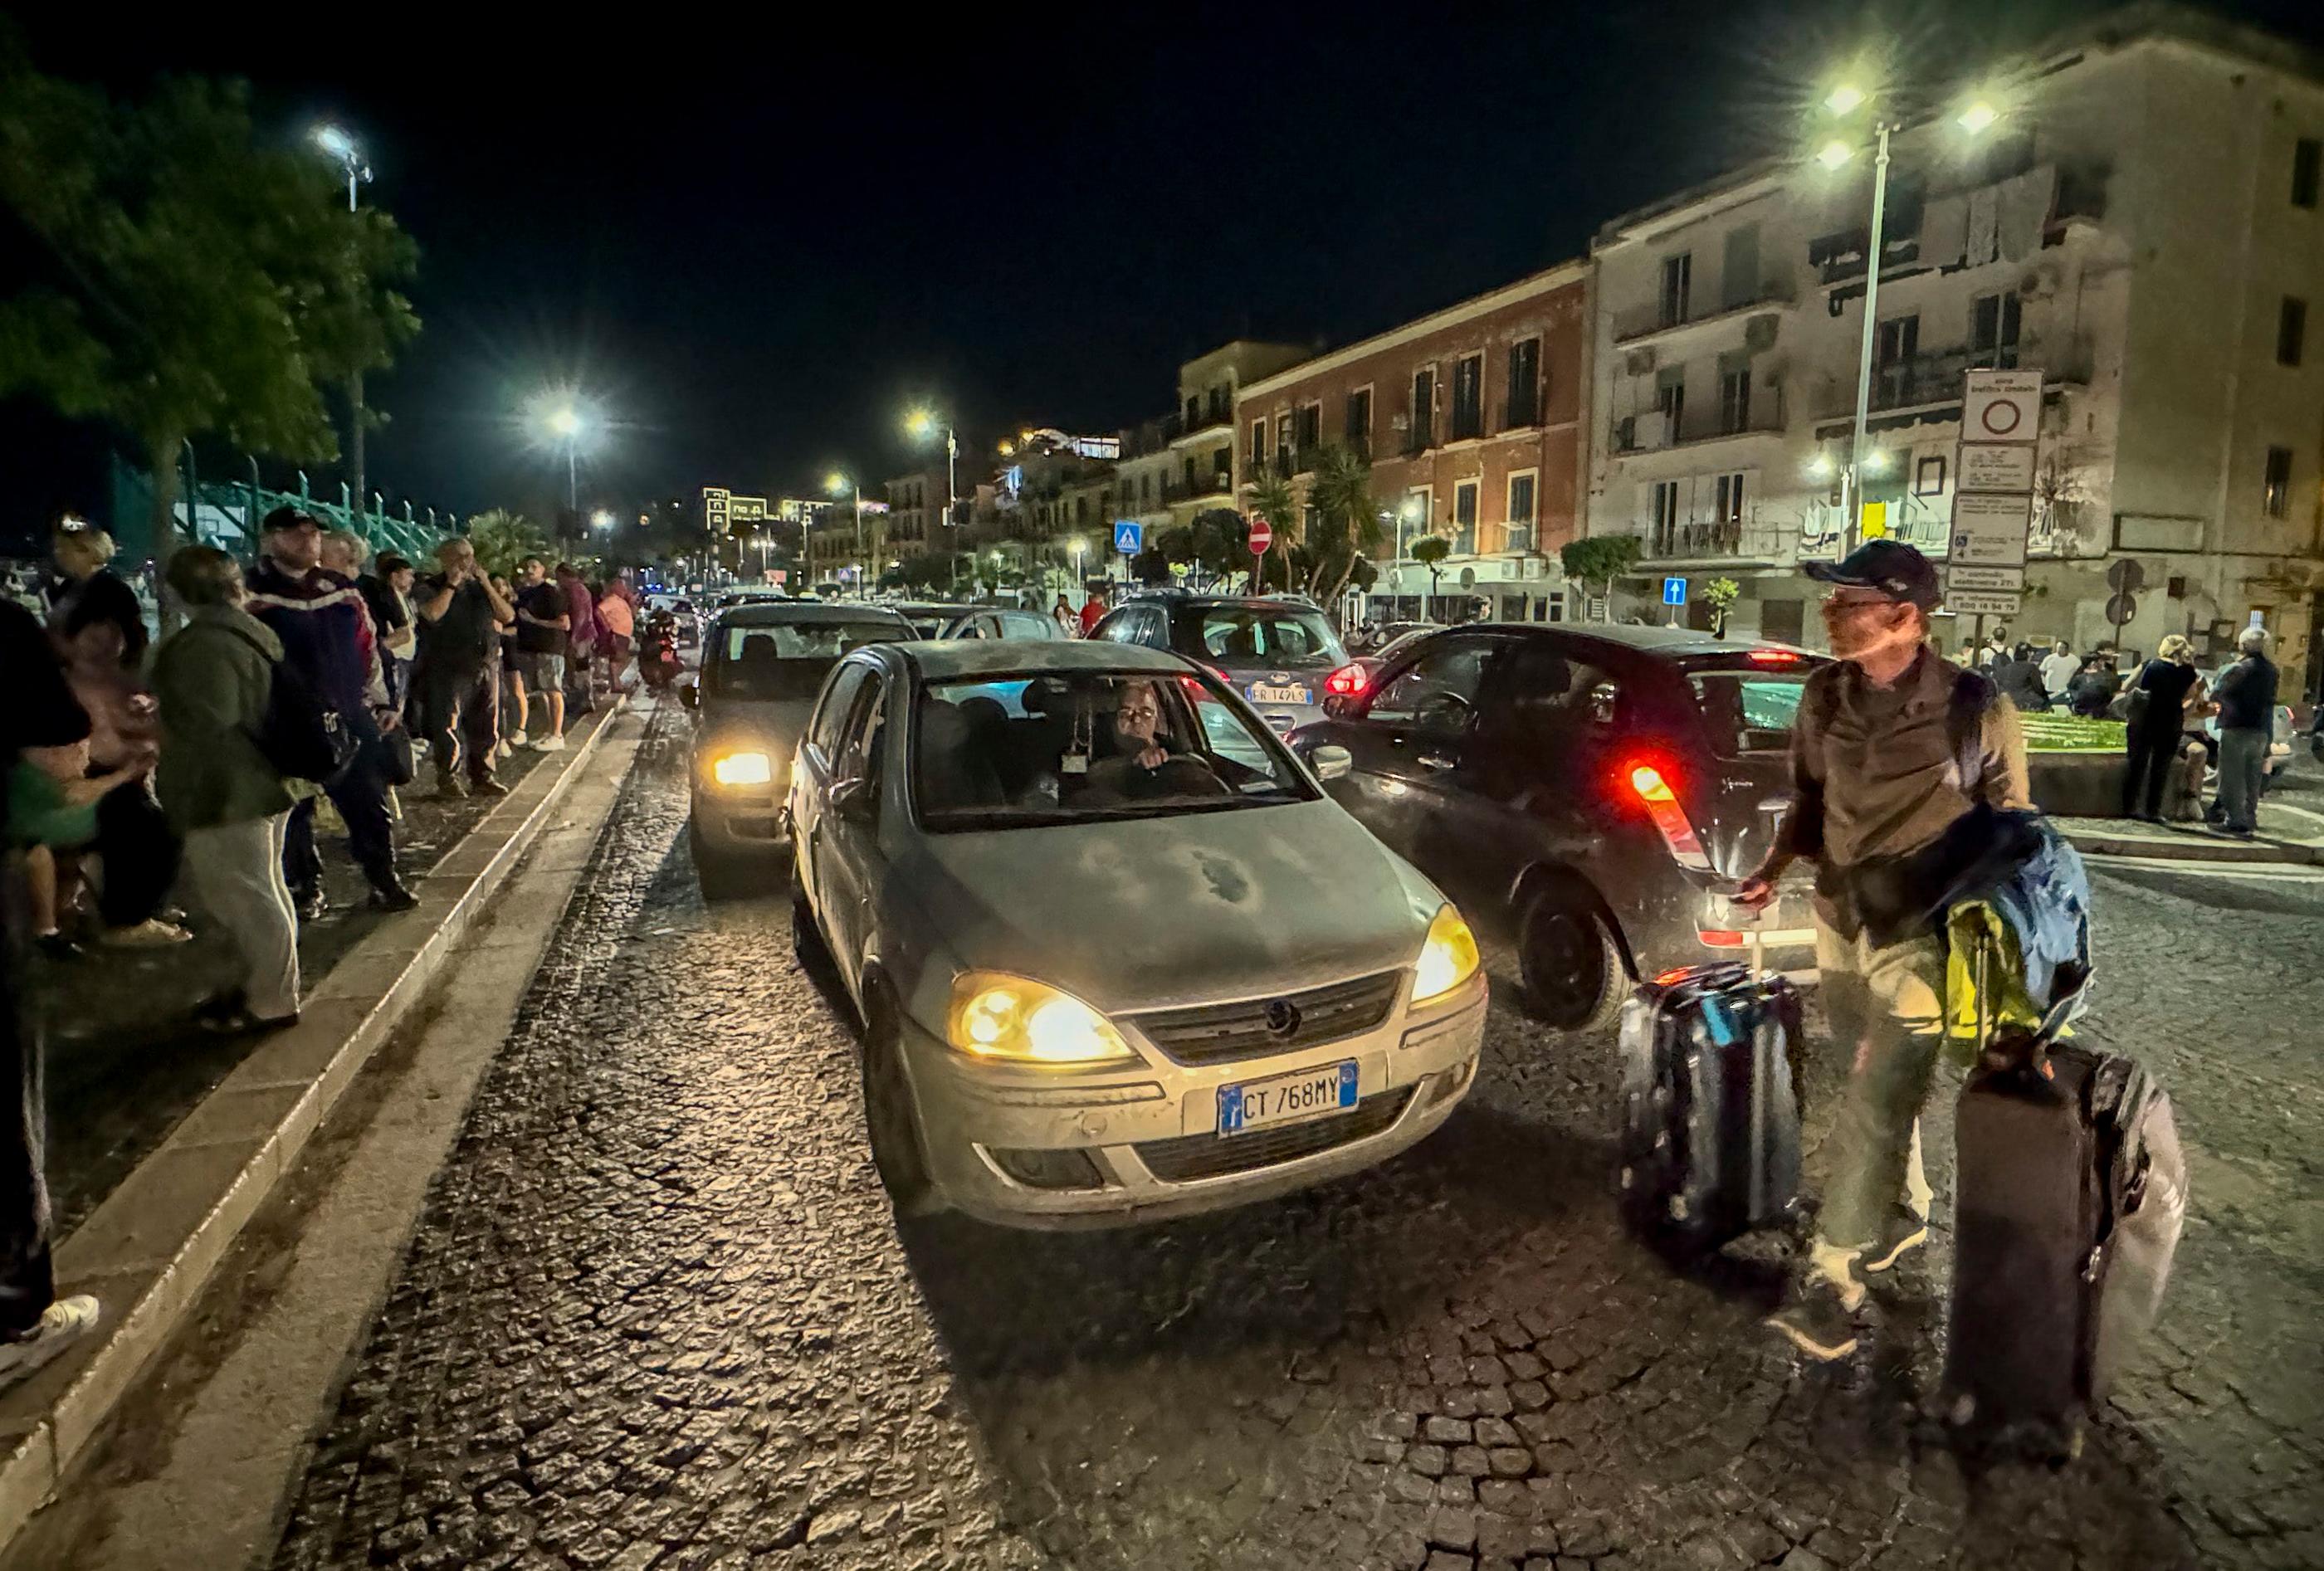 Des habitants de la région de Naples ont quitté leur logement pour se réfugier dans la rue après plusieurs tremblements de terre lundi soir. MAXPPP/KONTROLAB/Salvatore Laporta